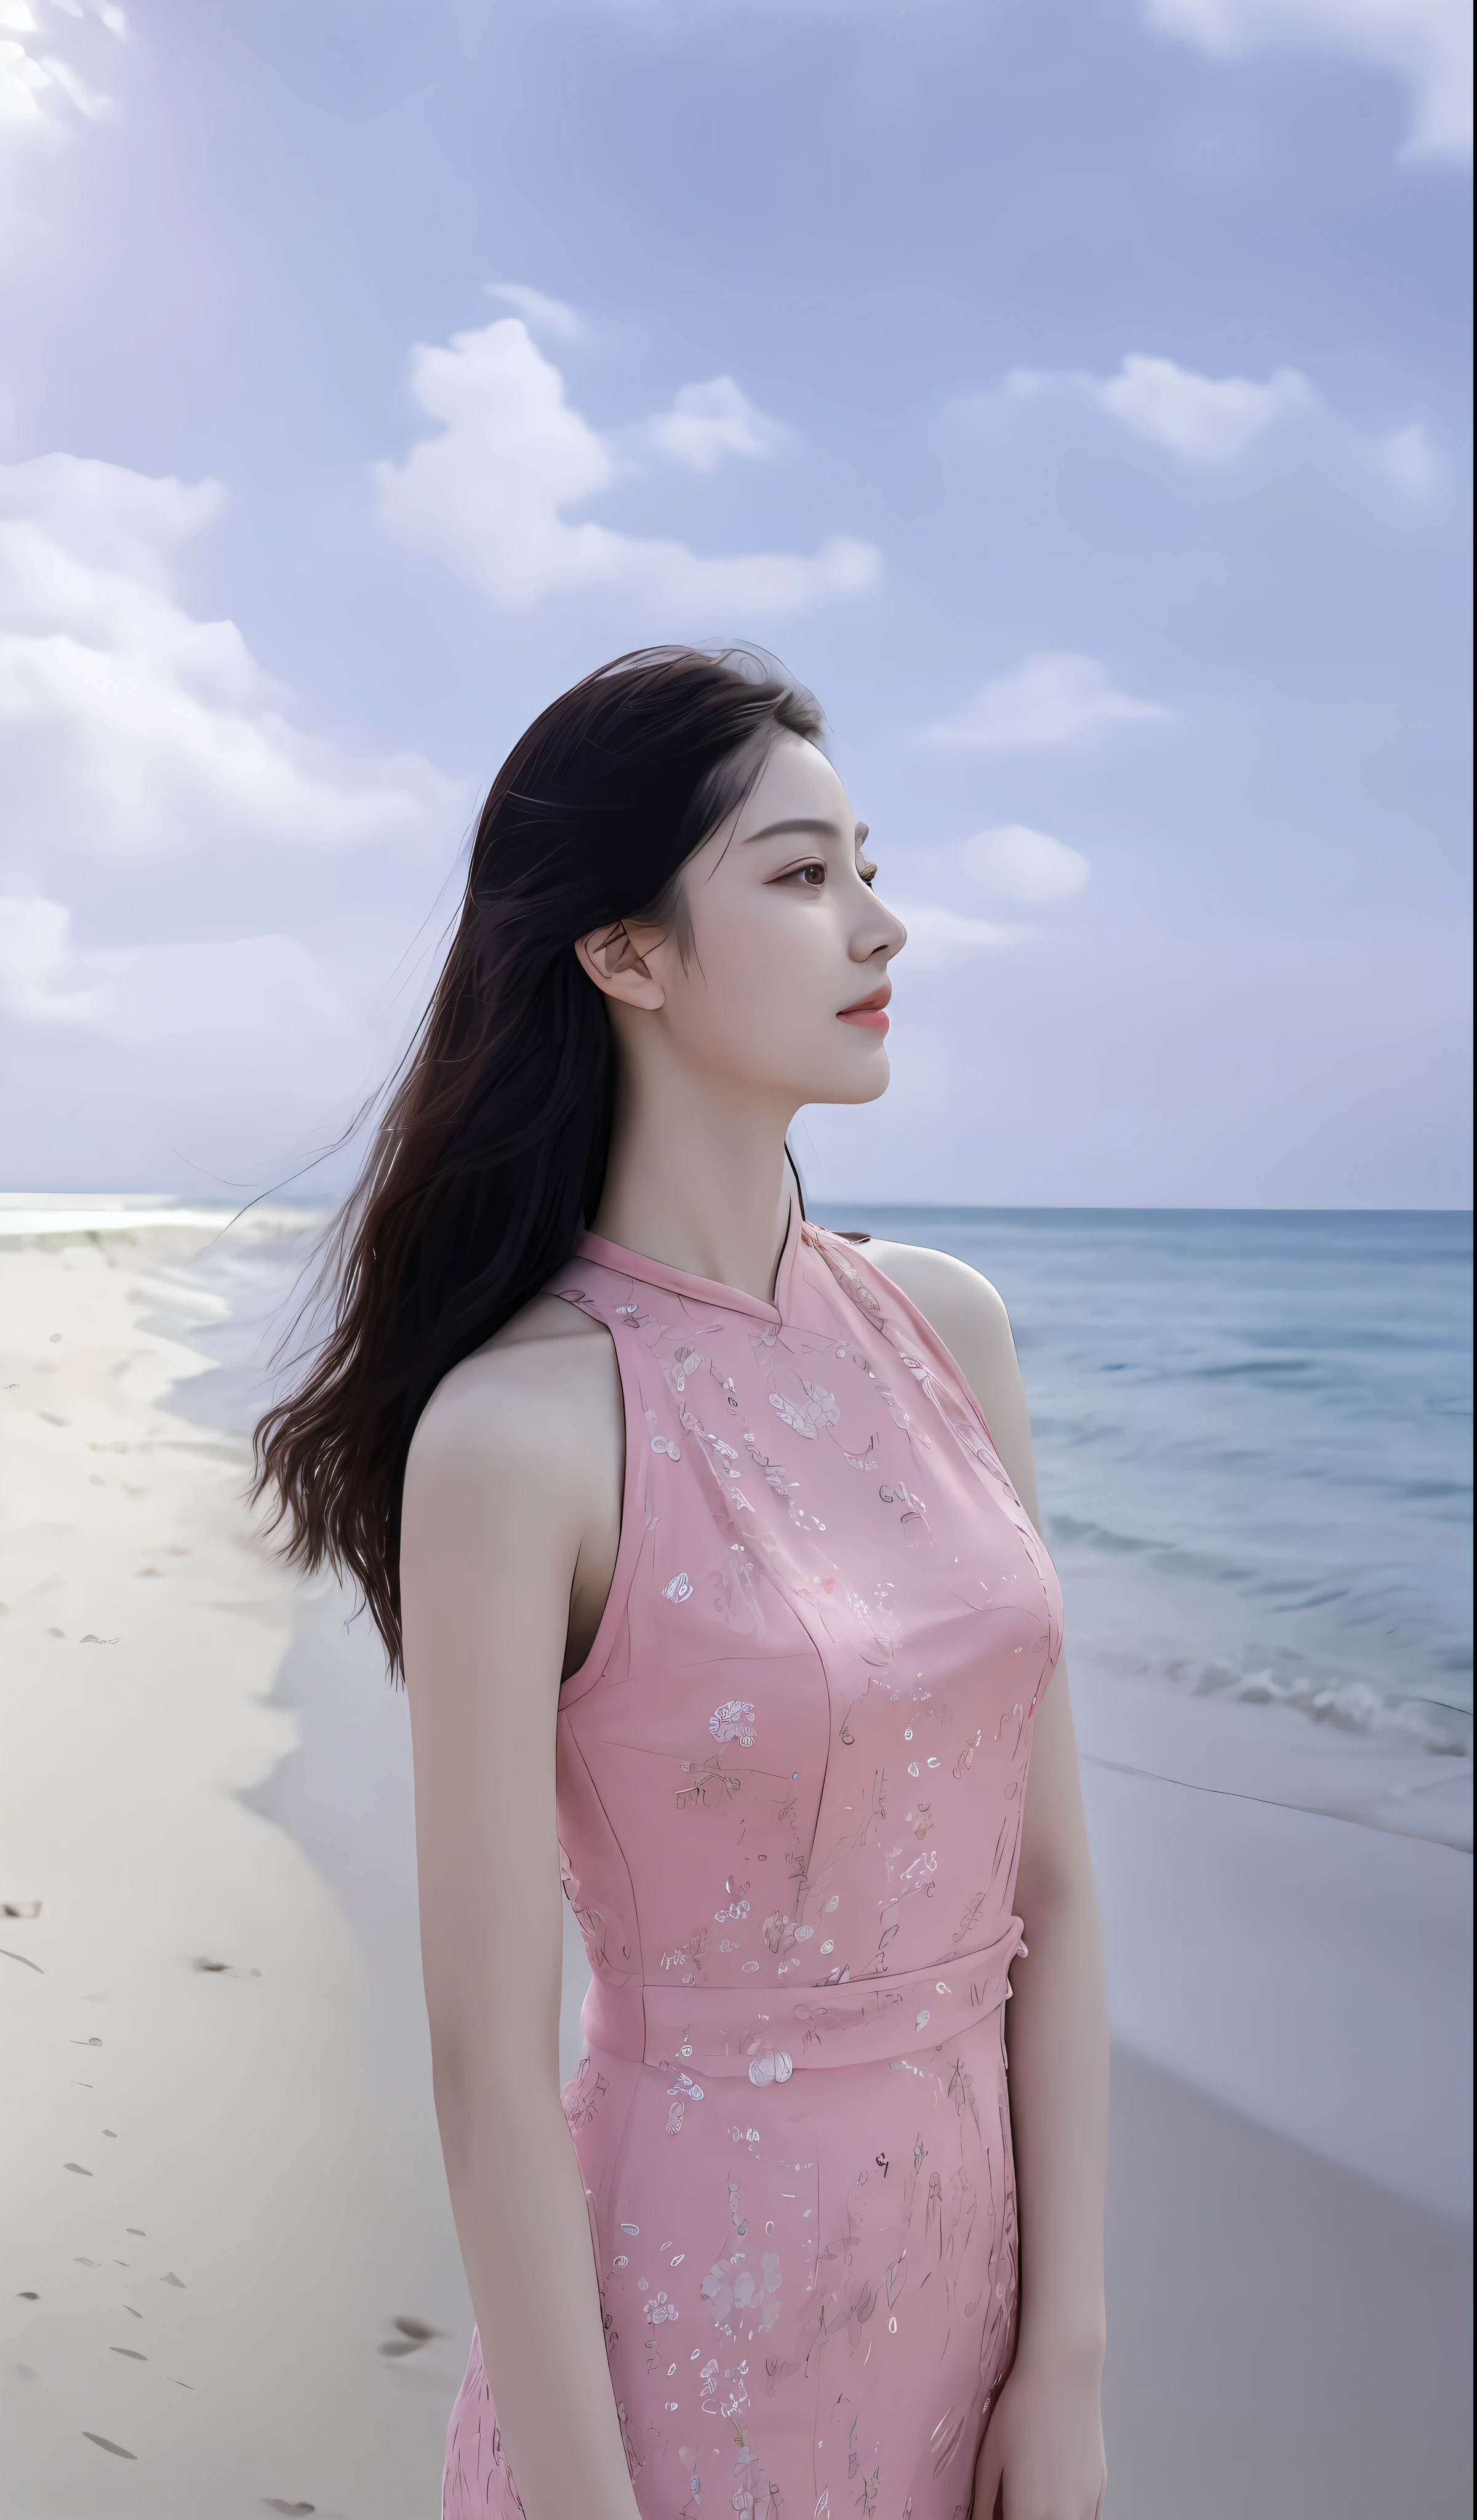 (傑作), (最好的品質), (詳細的), 1 名女孩, 22岁, 俏皮的表情, 大乳房, 長髮, 美麗的, 自然的, 裸露, 穿著粉紅色裙子的阿拉菲德女子站在海灘上, shaxi, sea queen Mu Yanling, Ruan Jia 美麗的! , 封面照片杜鵑肖像, li zixin, 靈感來自唐逸芬, Chen Xintong, Ye Wenfei, 靈感來自謝孫, 梅青, 靈感來自程家穗, 受馬元宇啟發